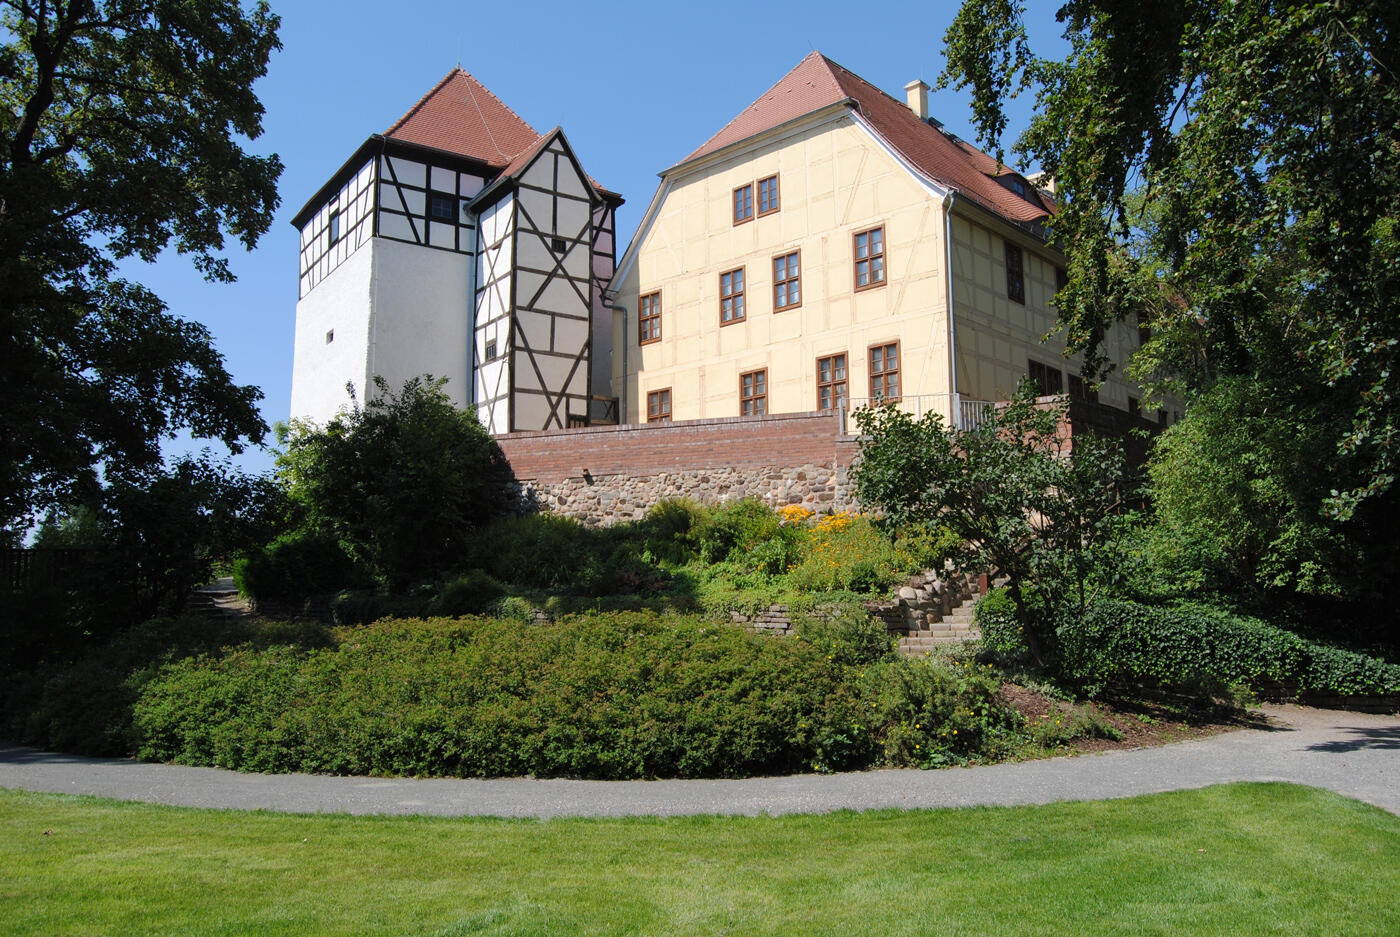 Alte Burg mit Fachwerkturm in Sachsen.